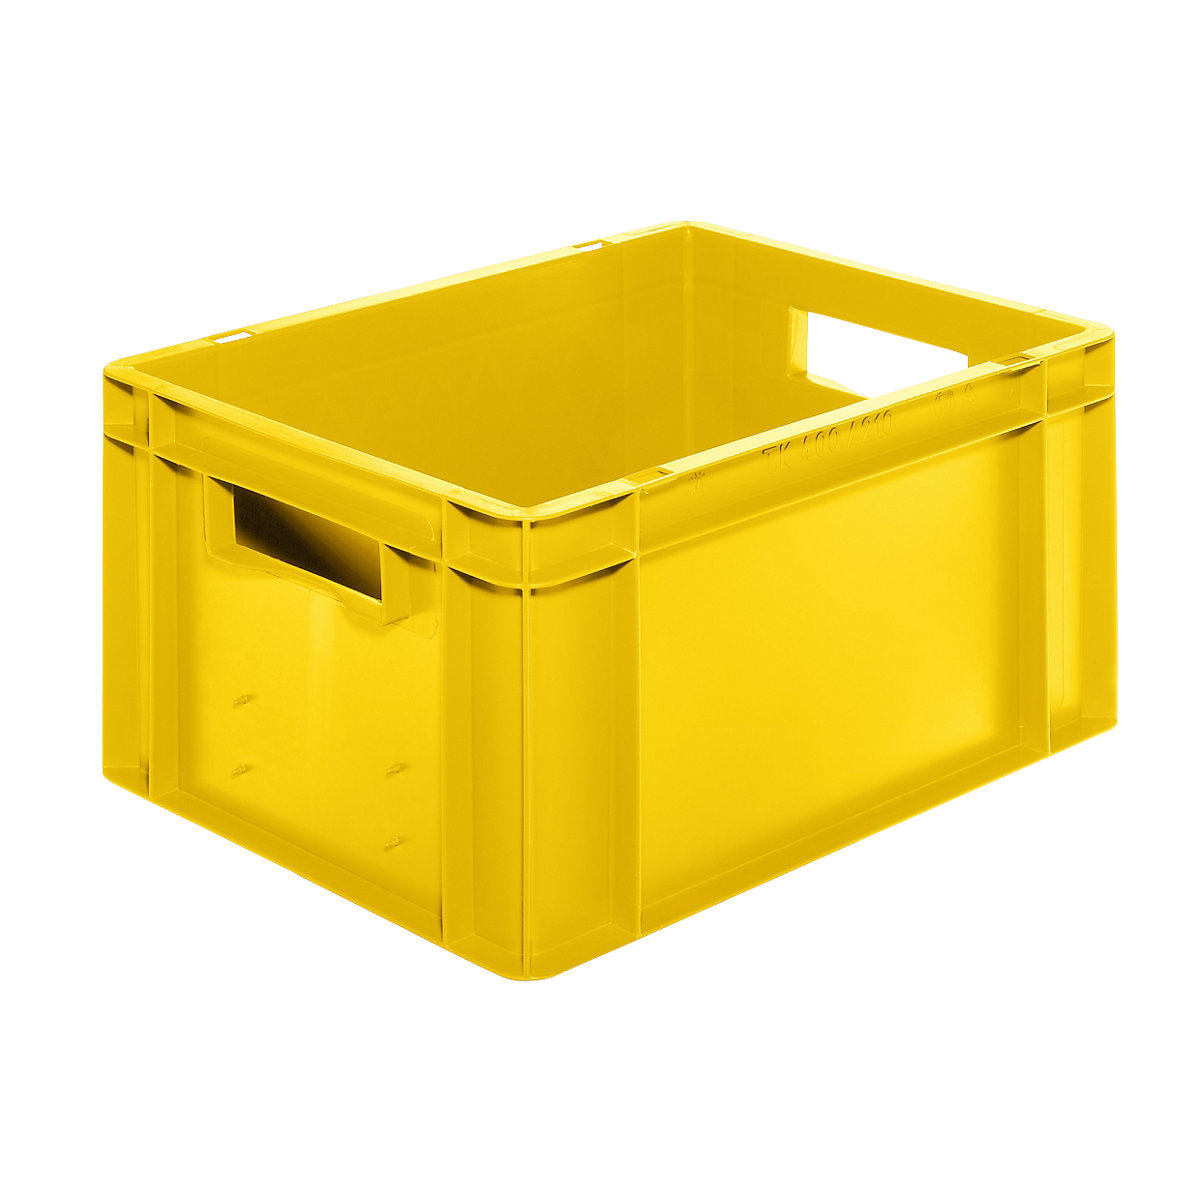 Euro-Format-Stapelbehälter, Wände und Boden geschlossen, LxBxH 400 x 300 x 210 mm, gelb, VE 5 Stk